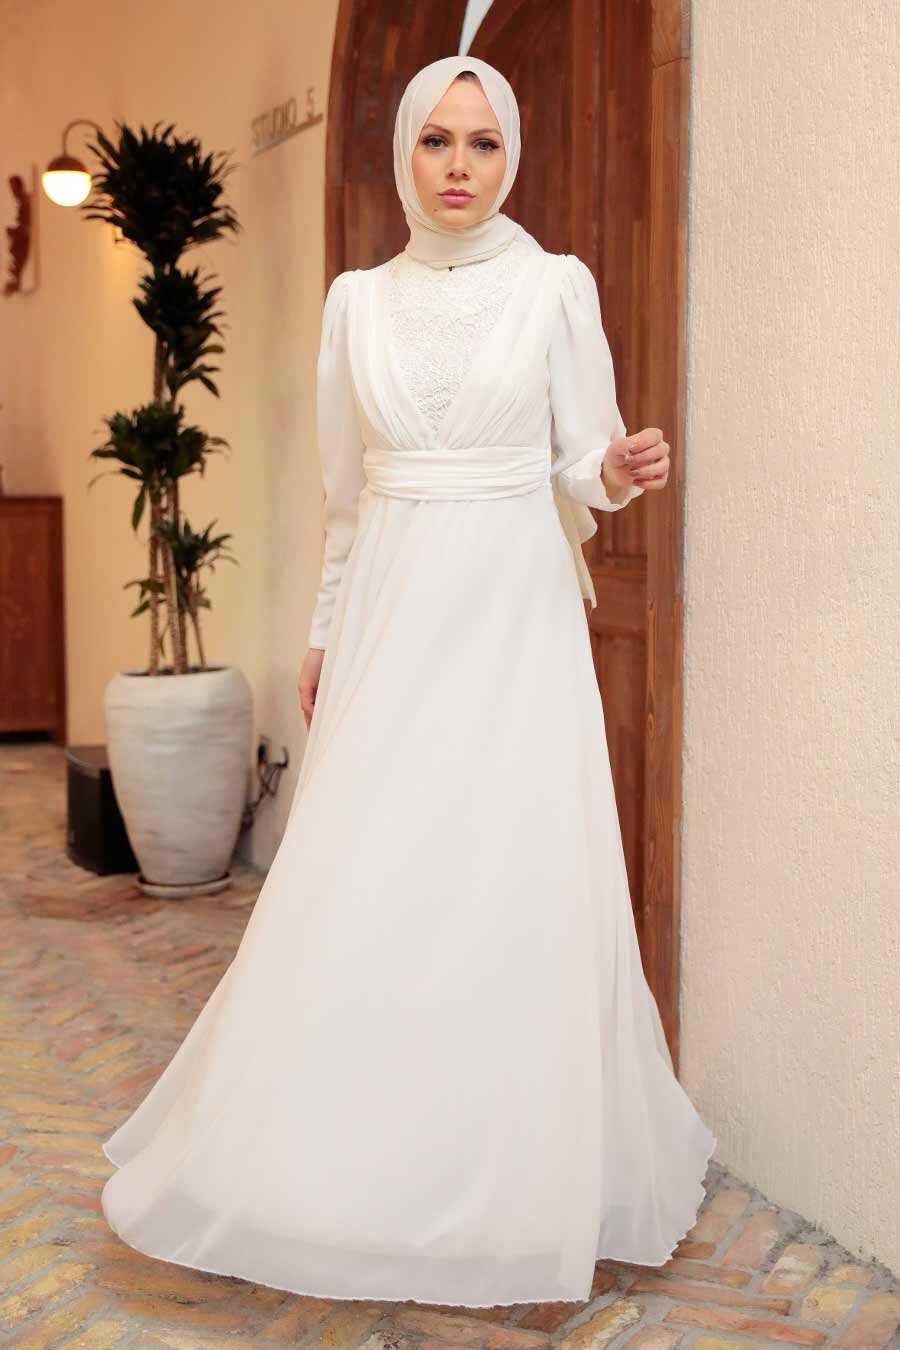 Neva Style -Plus Size White Modest Islamic Clothing Wedding Dress 56280B